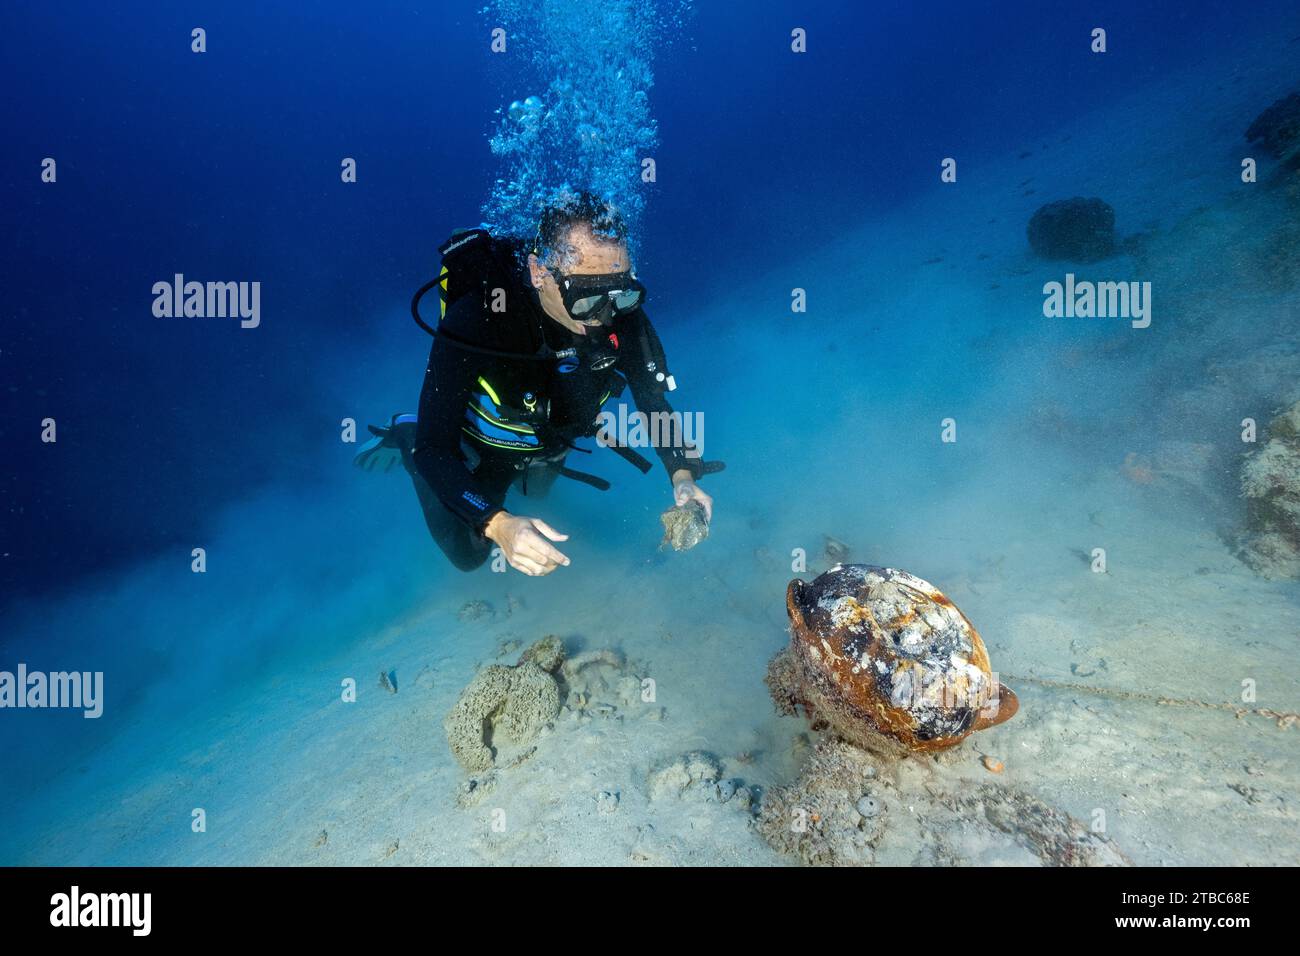 Un chercheur a découvert une amphore argileuse minoenne rare intacte, B.C 1800, dans un fond sablonneux dans les eaux profondes de Bozburun Marmaris Turkiye Banque D'Images